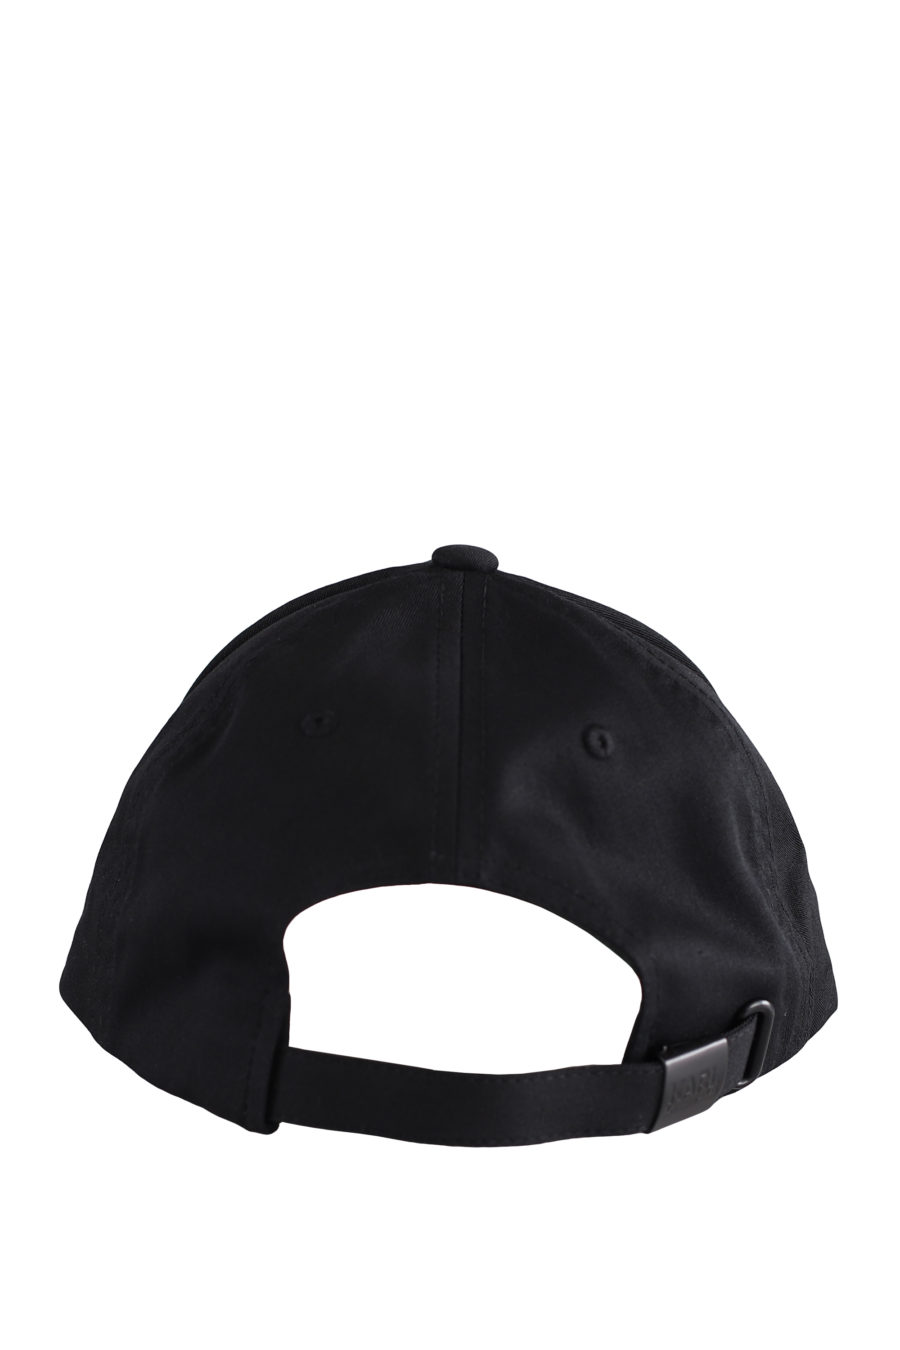 Gorra negra con logotipo negro en relieve - IMG 9600